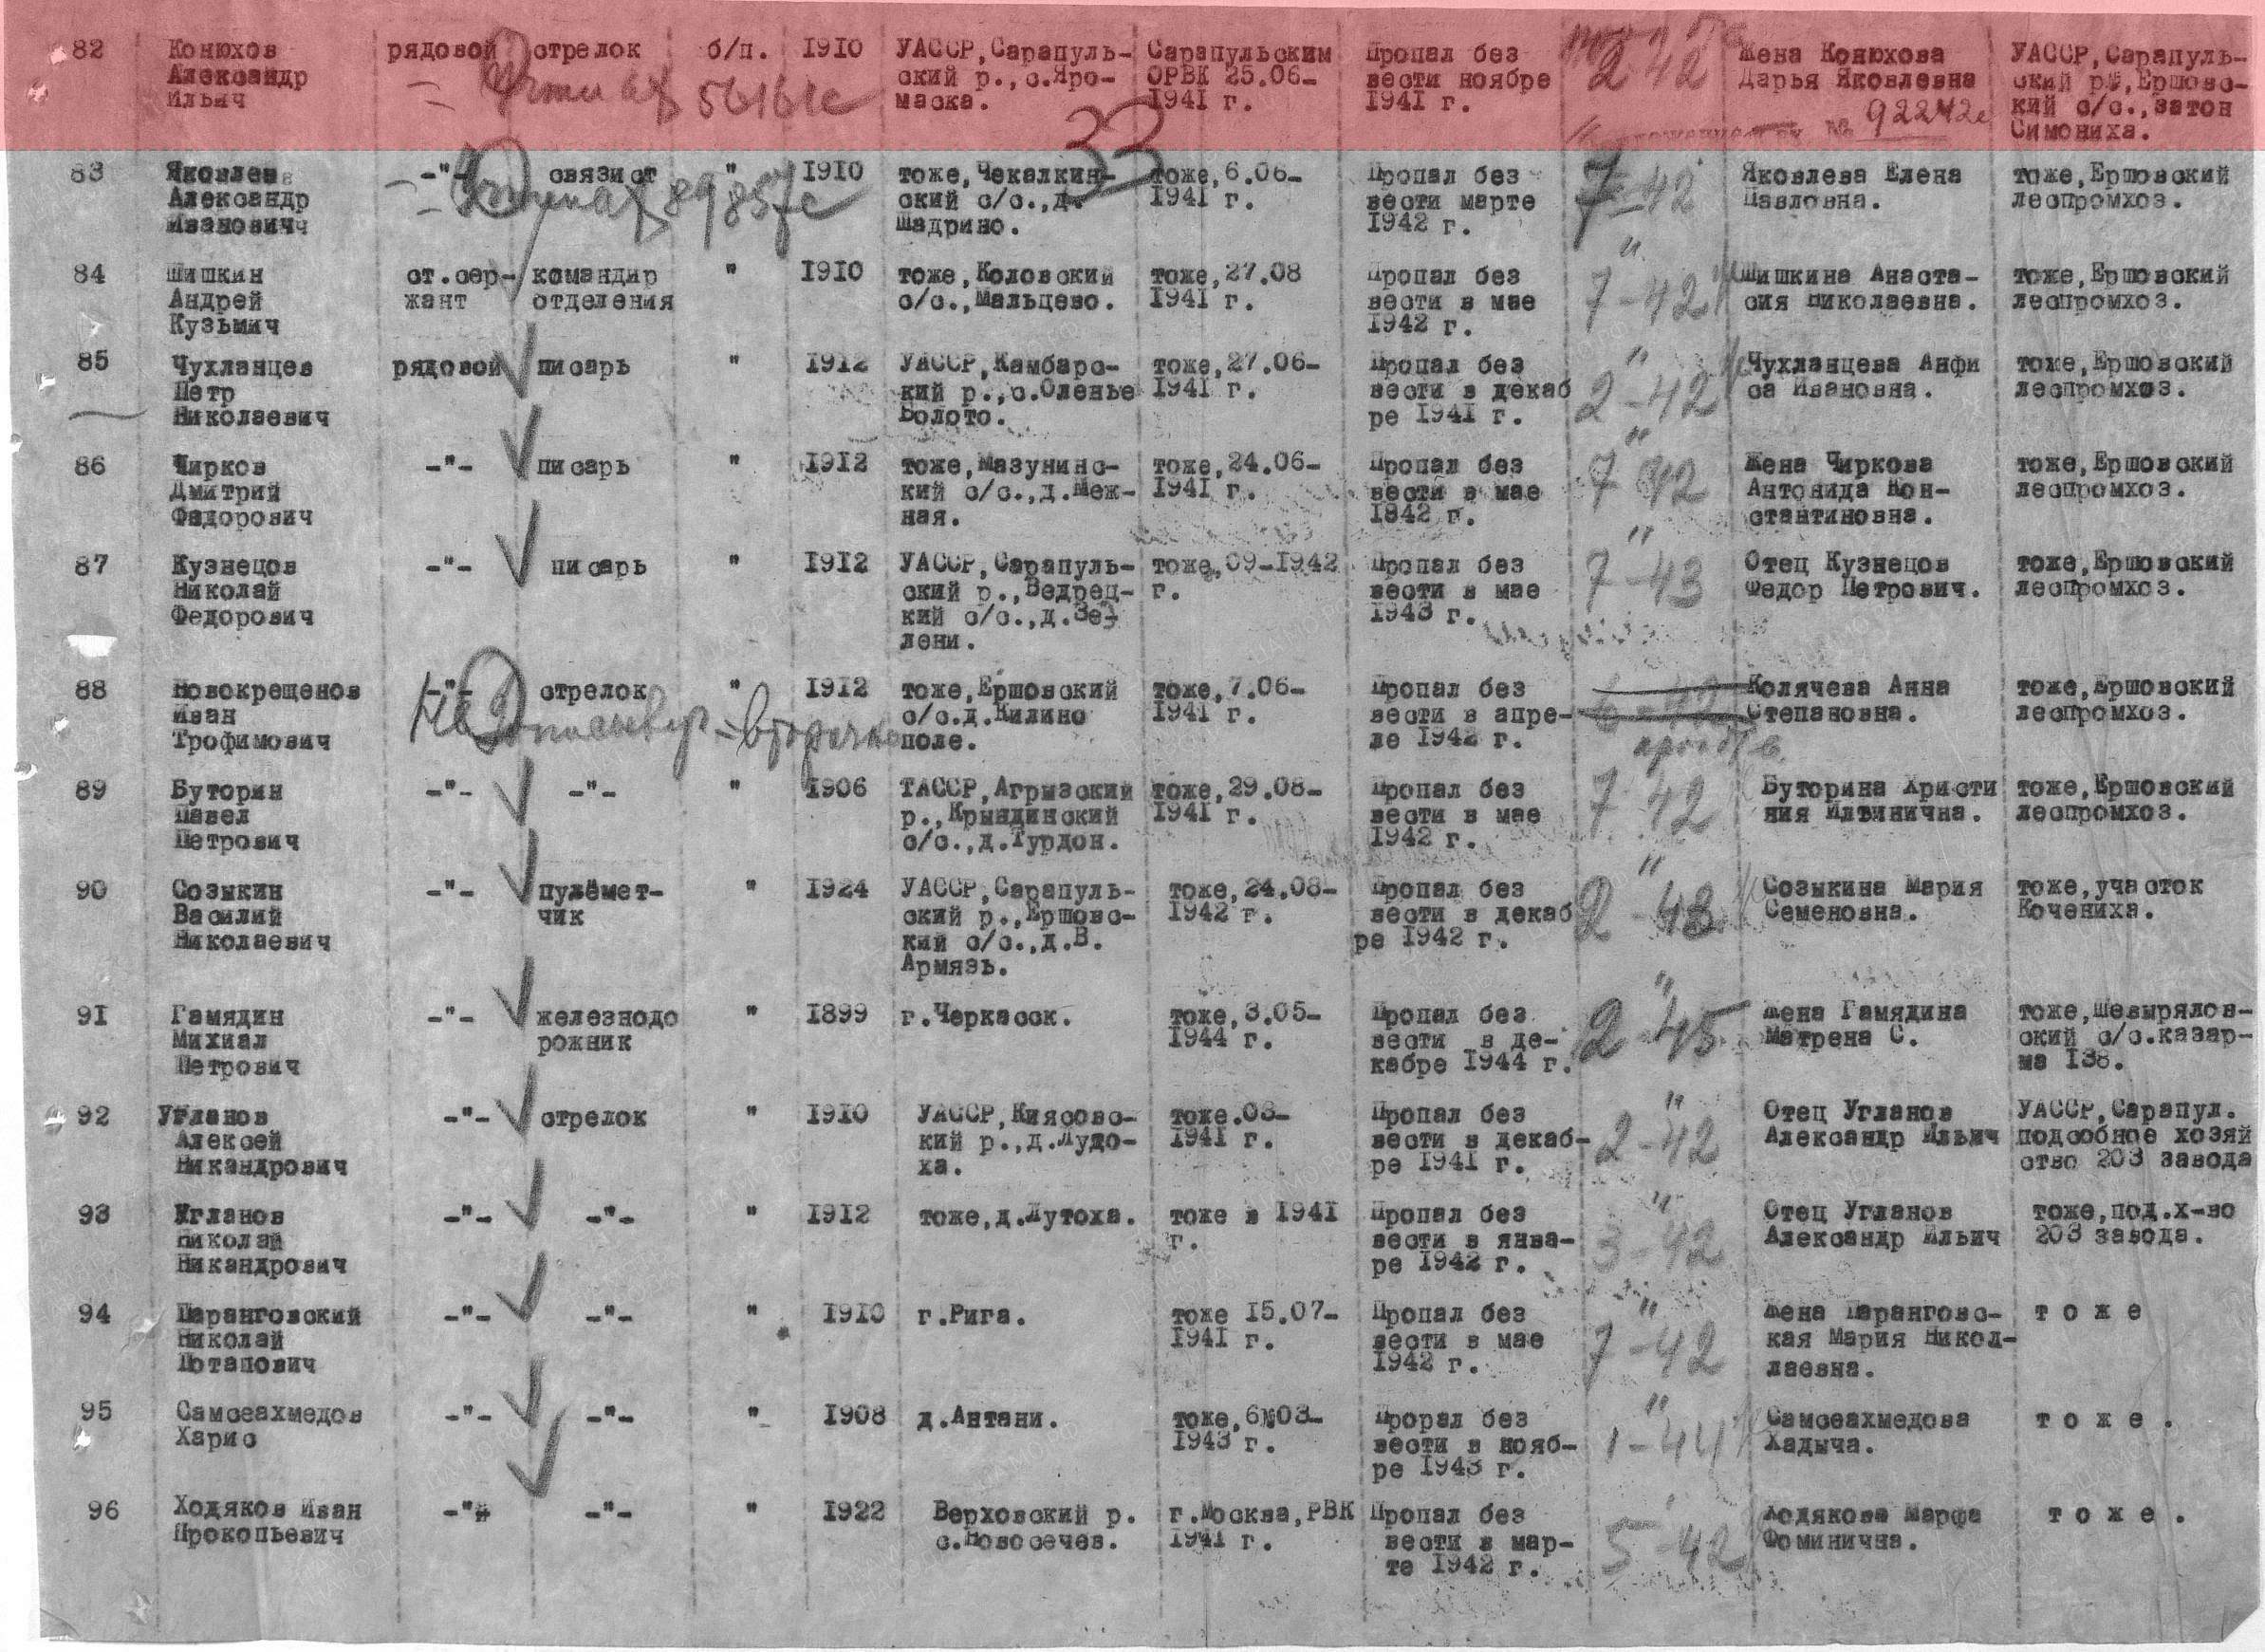 Лист донесения послевоенного периода, уточняющего потери, 11.11.1946